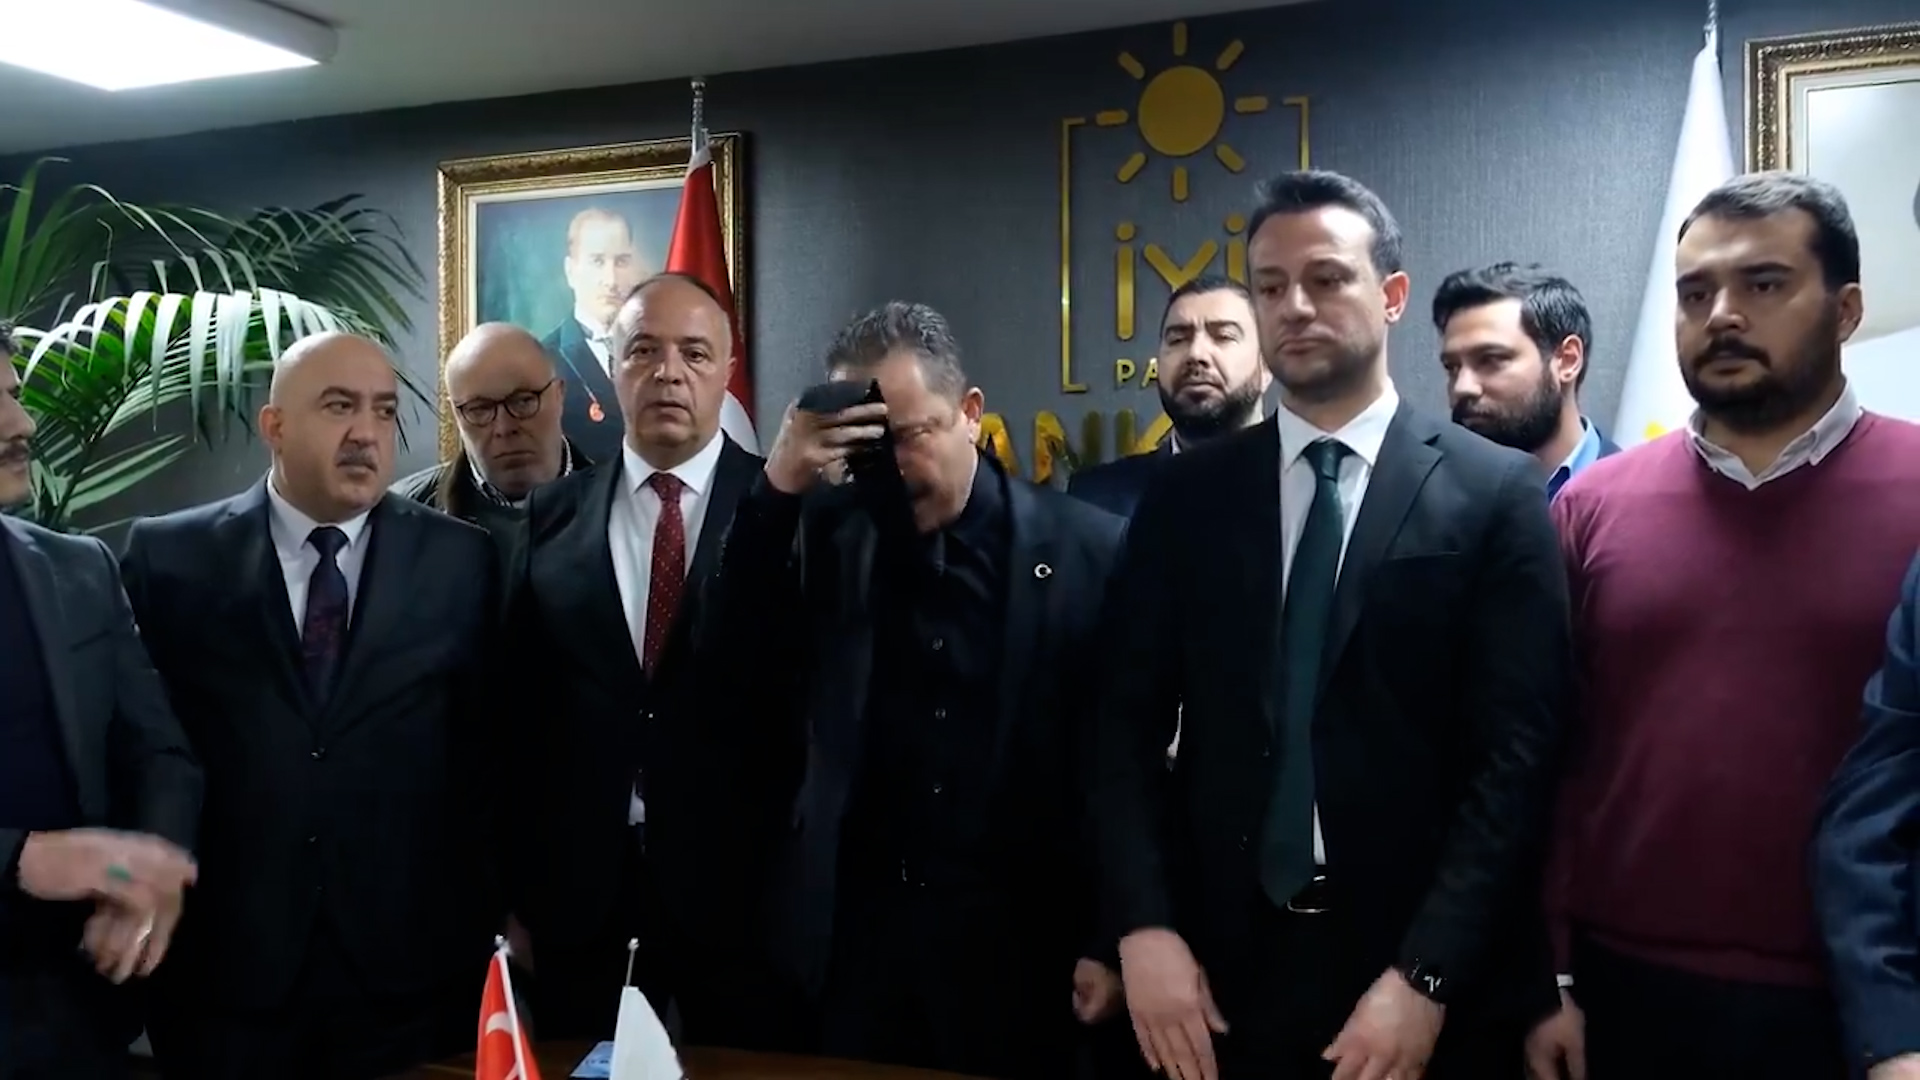 Görevden alınan İYİ Parti Ankara İl Başkanı Yener Yıldırım Atatürklü kravatını öperek veda etti: Koltuklar onların olsun, biz vatan sevdalısıyız